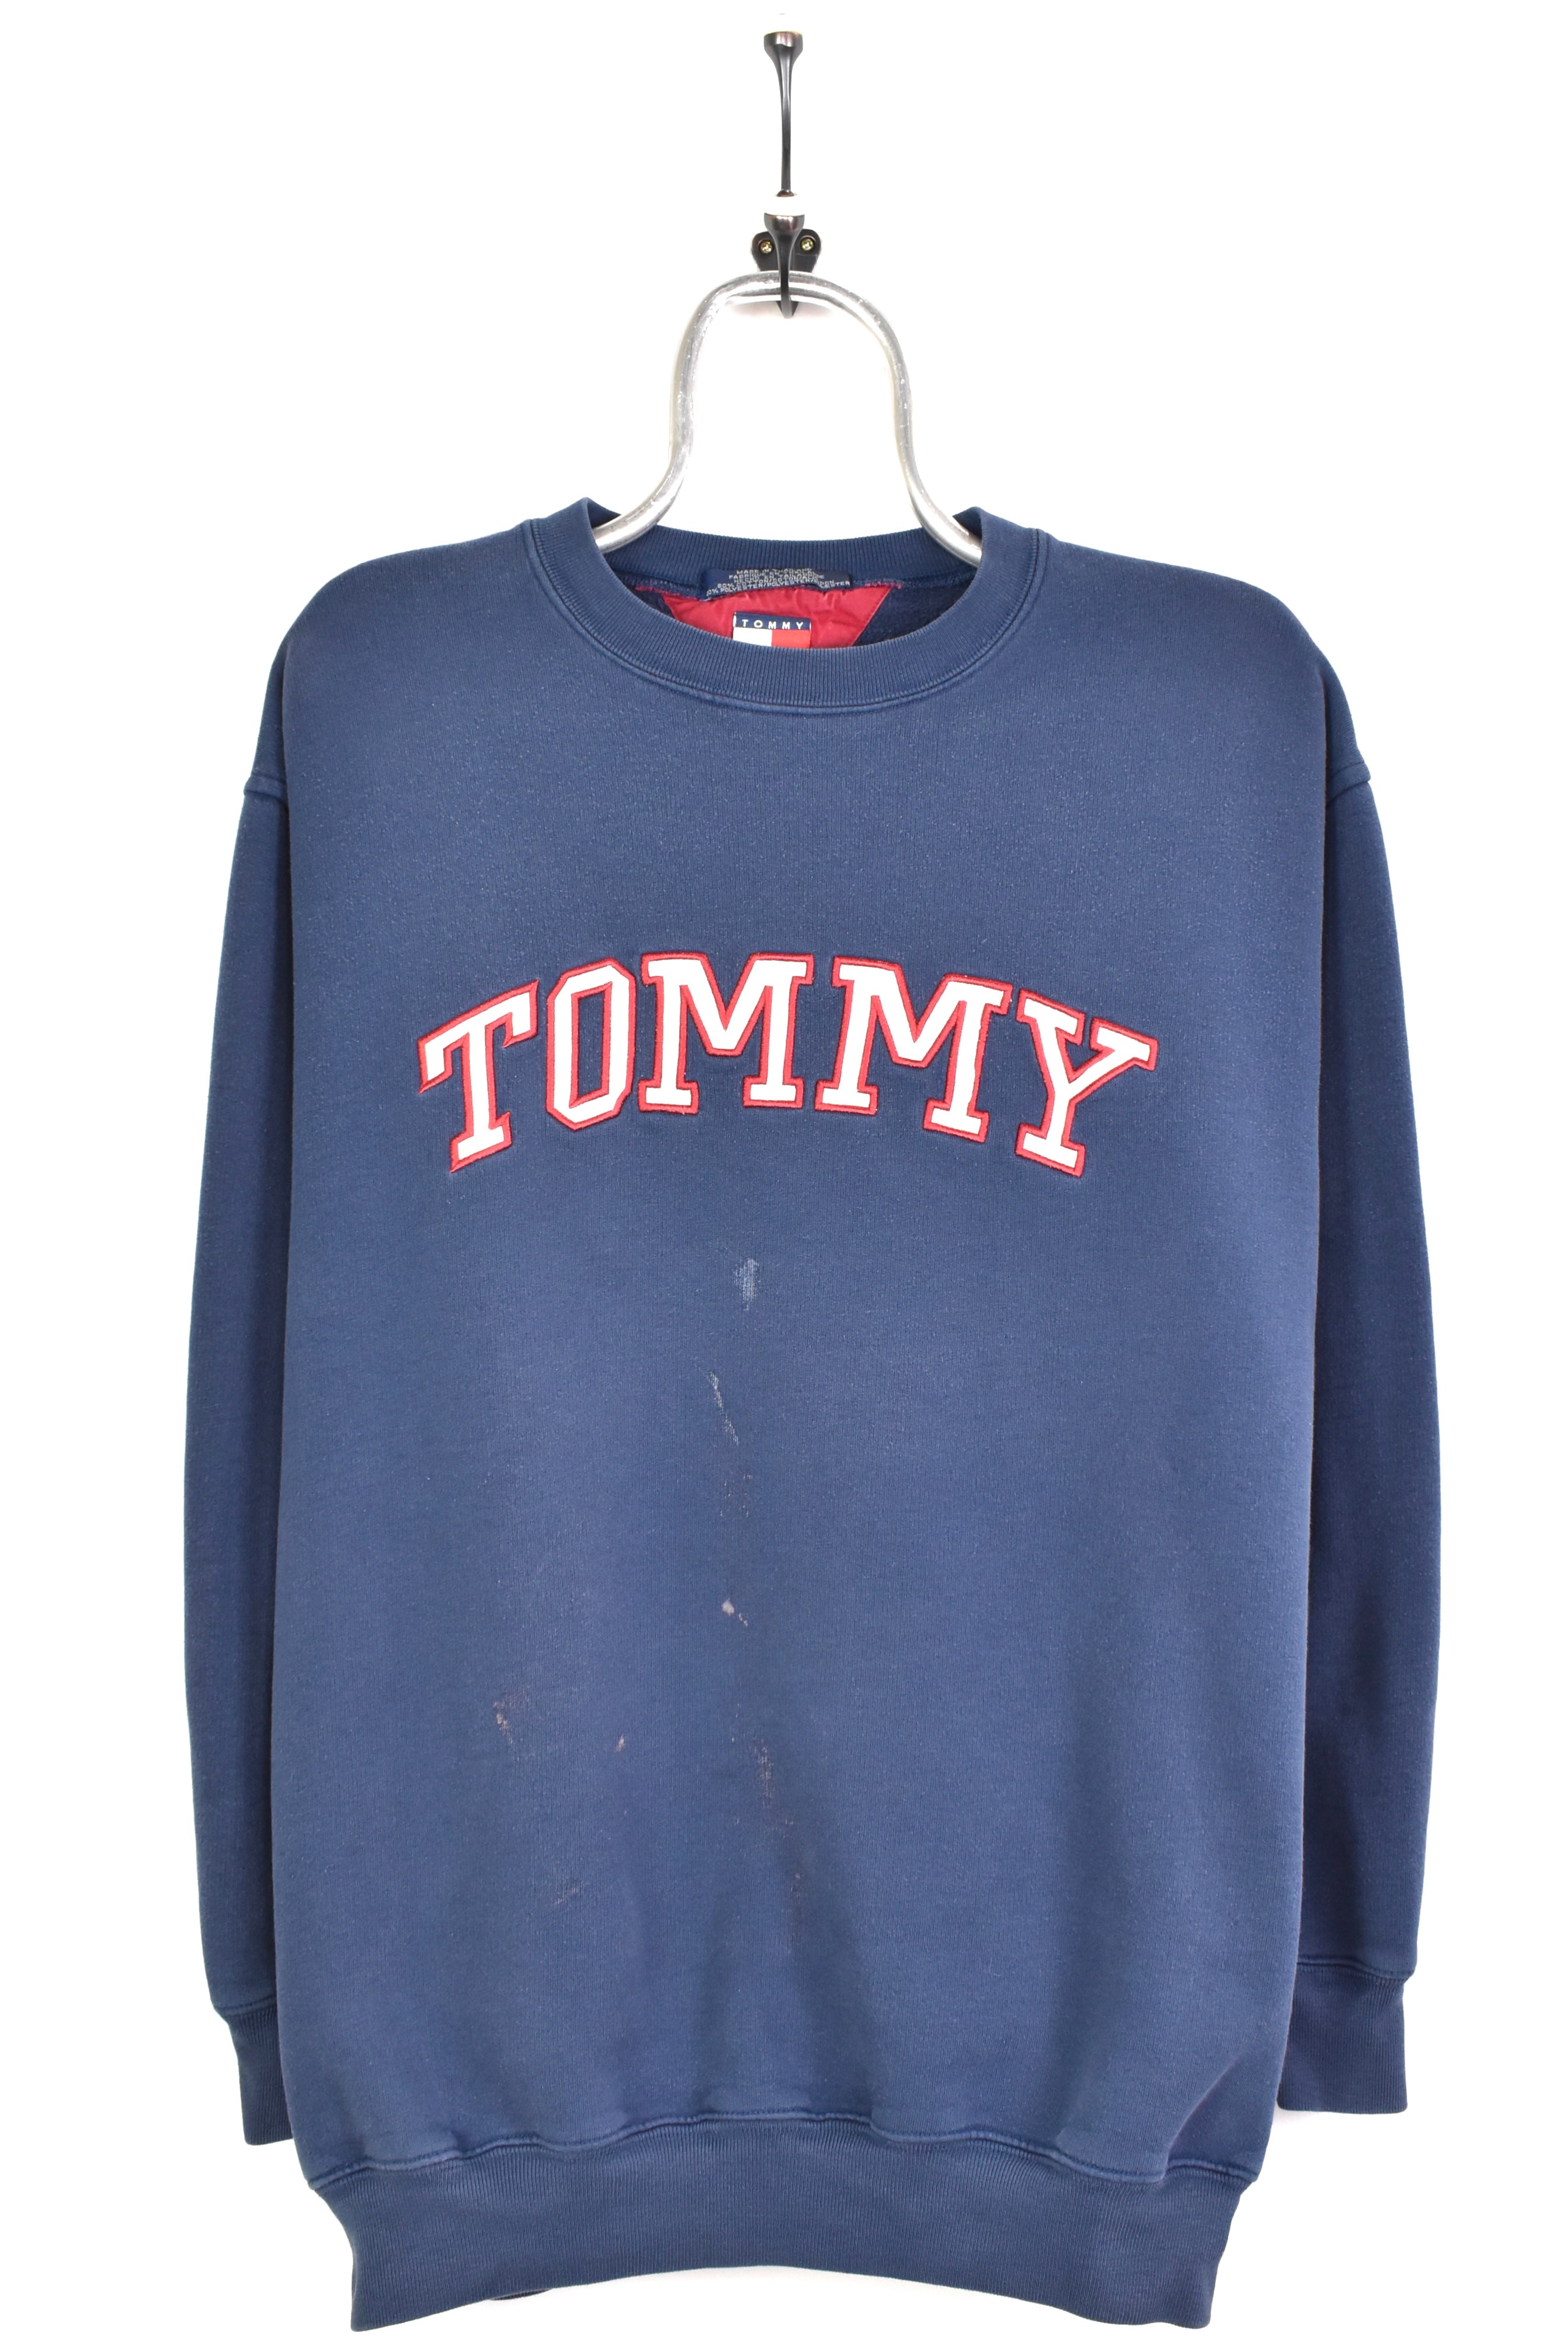 Shop Vintage Tommy Online